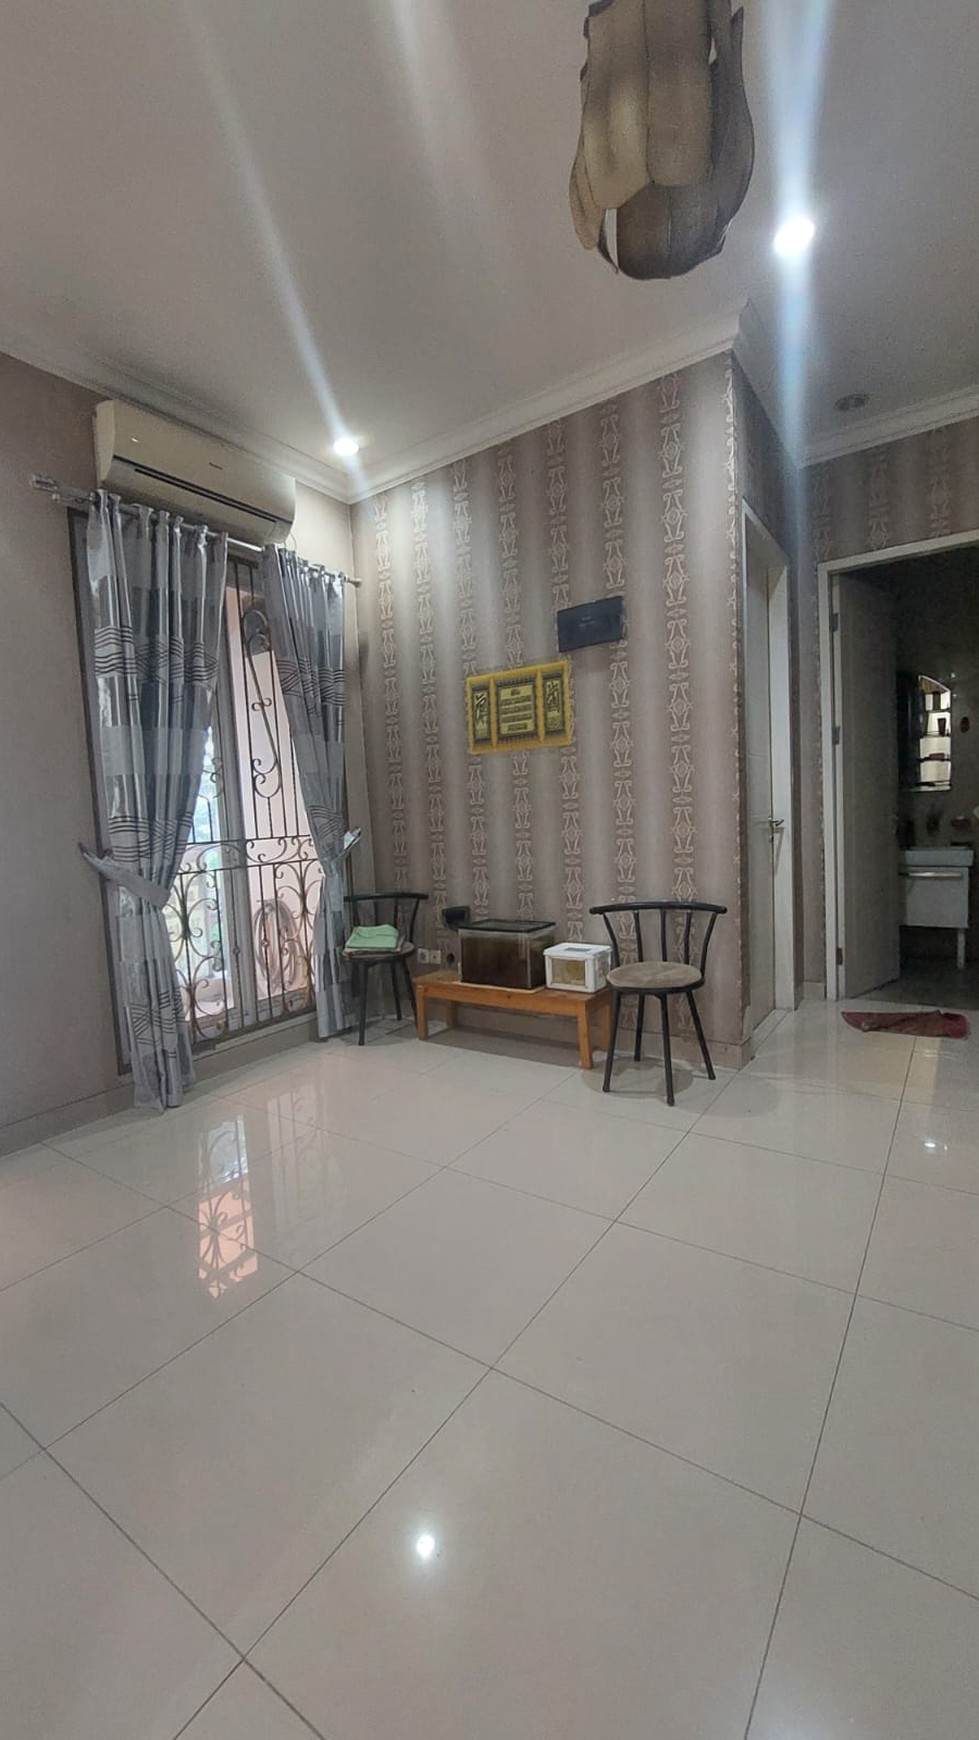 Rumah Rapih dan Apik, Furnished siap huni di Graha Raya Bintaro